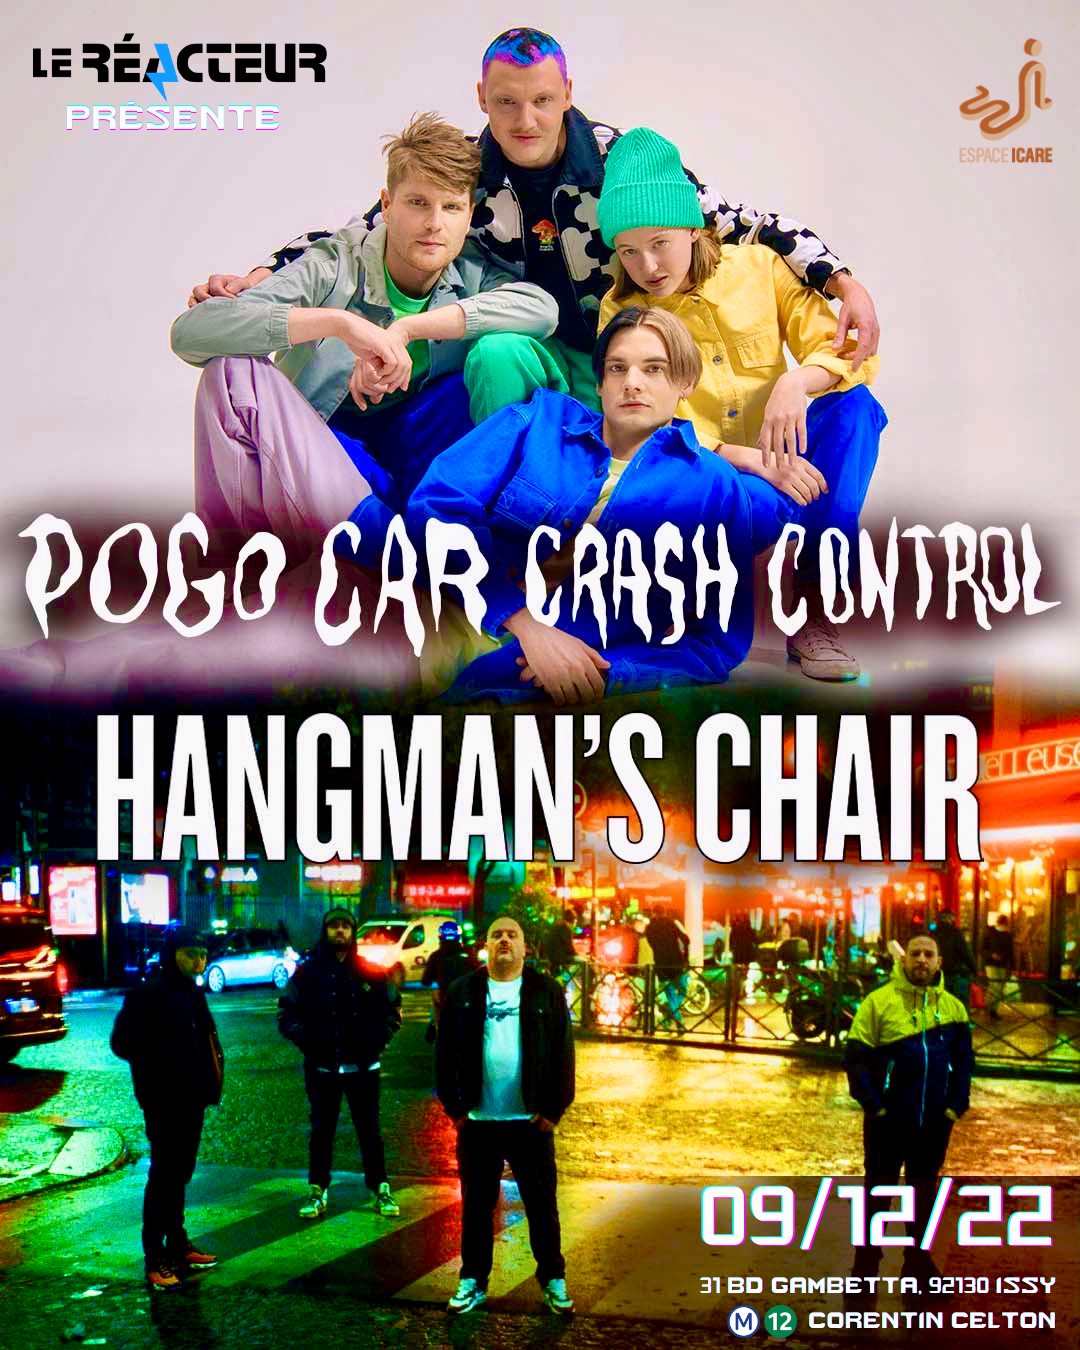 Pogo Car Crash Control + Hangman’s Chair @Espace Icare – Le Réacteur (Issy les Moulineaux) , le 9 Décembre 2022